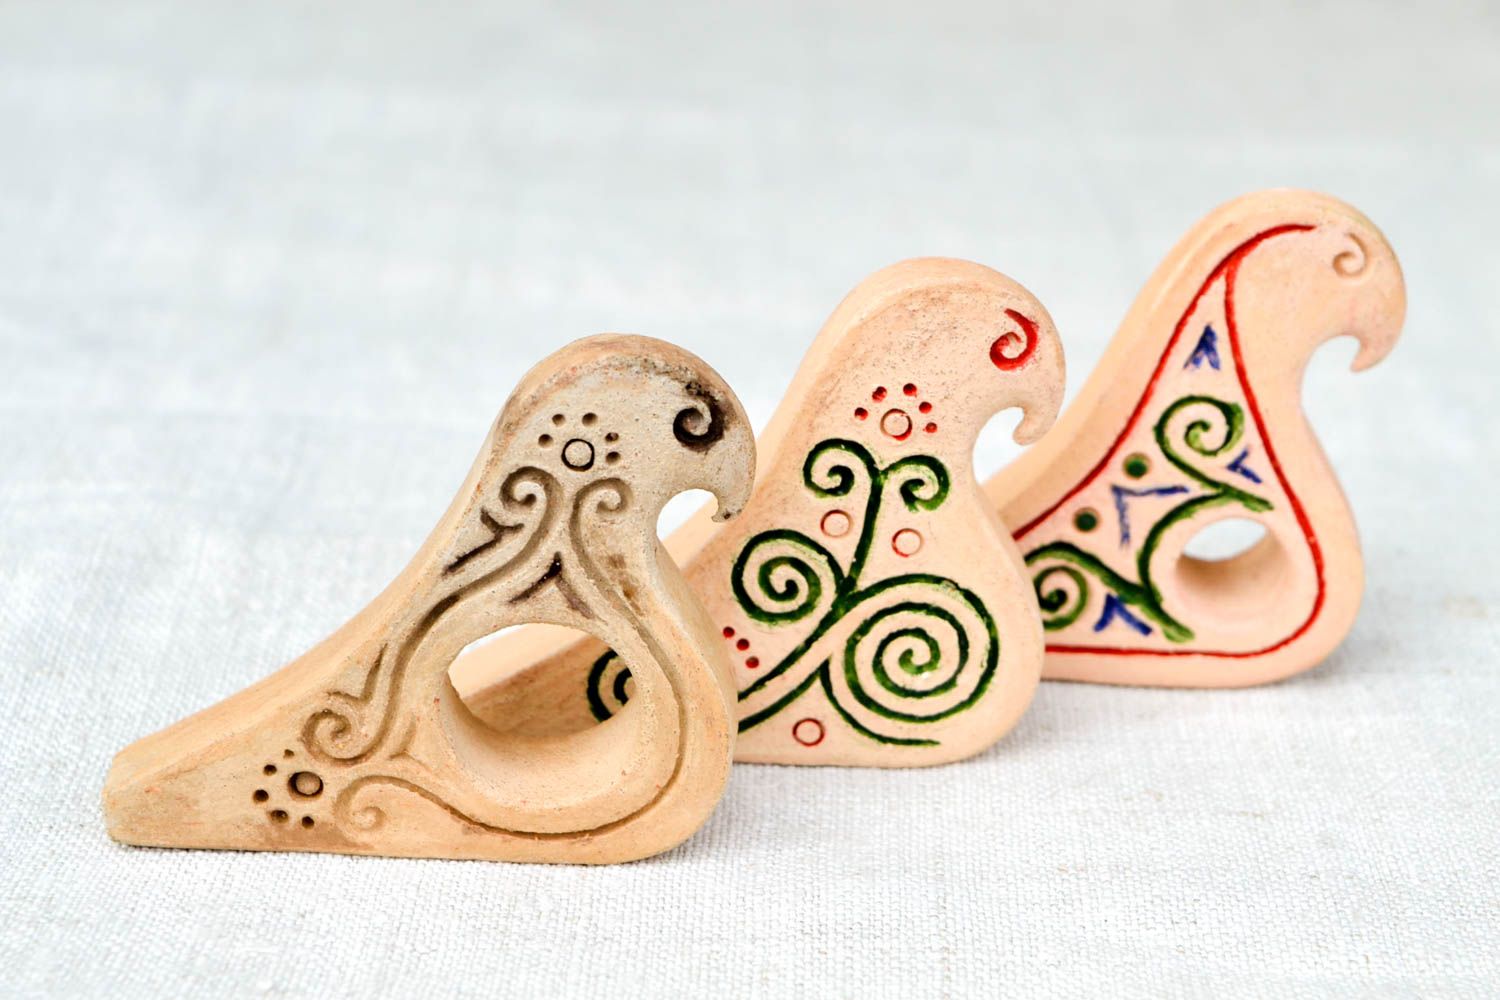 Ocarina instrumentos musicales artesanales silbatos de barro regalo original foto 4